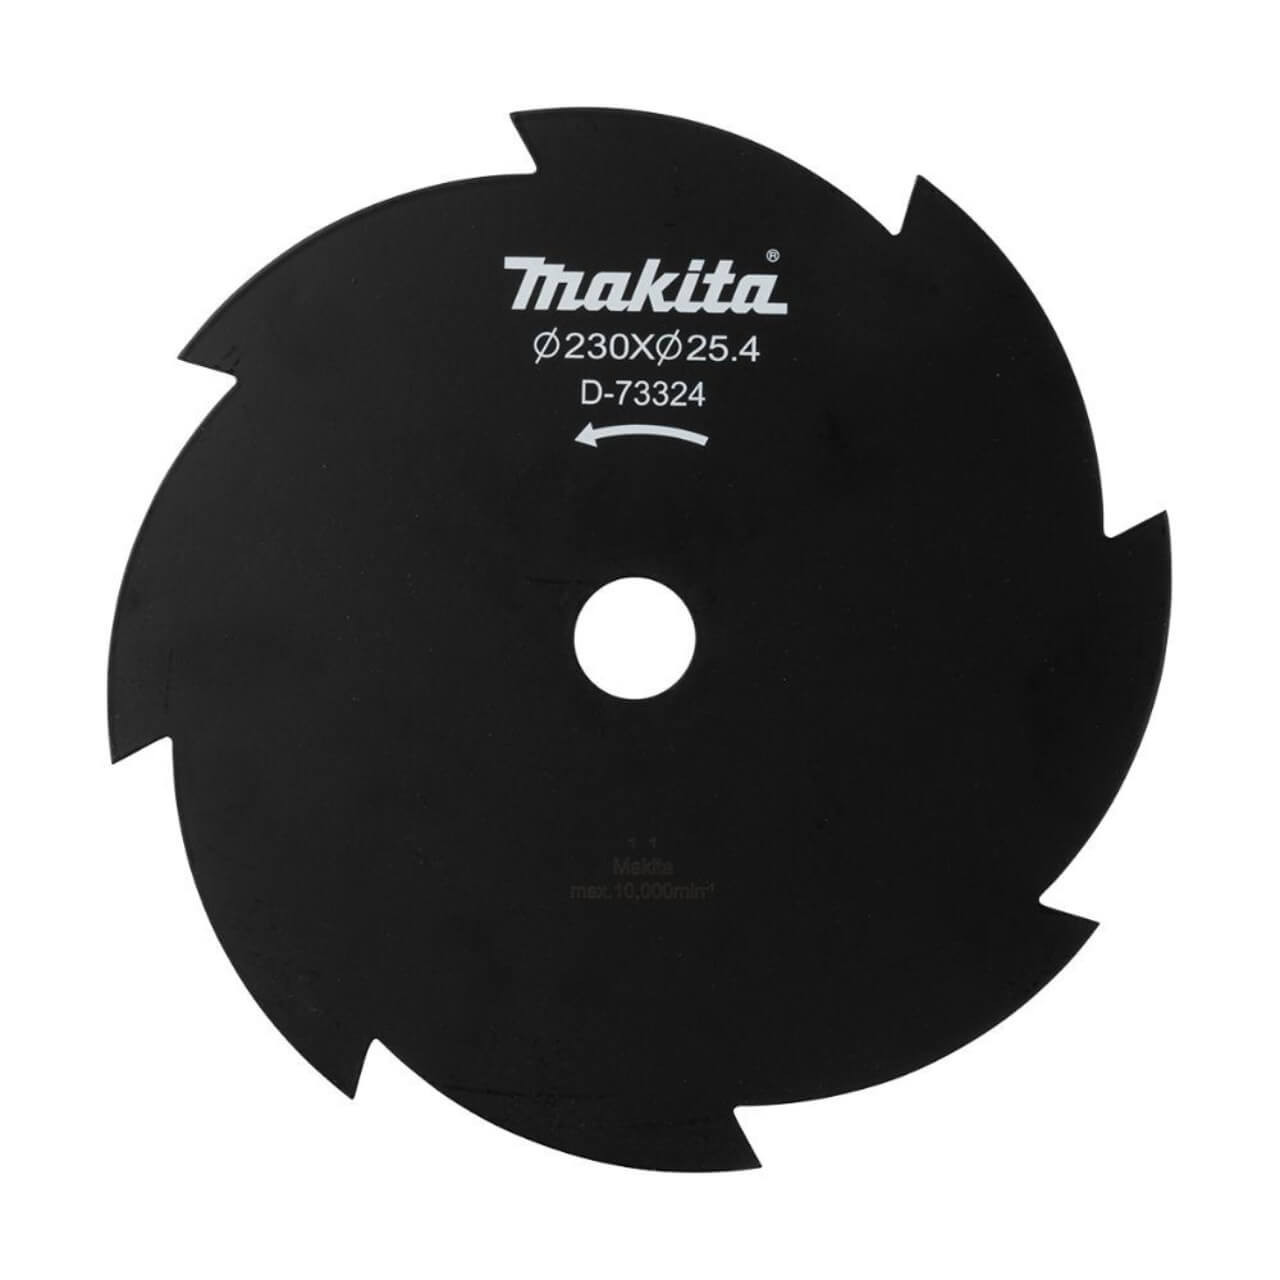 Makita B/Cutter Blade 230mm x 25.4 x 8T - 1.8mm